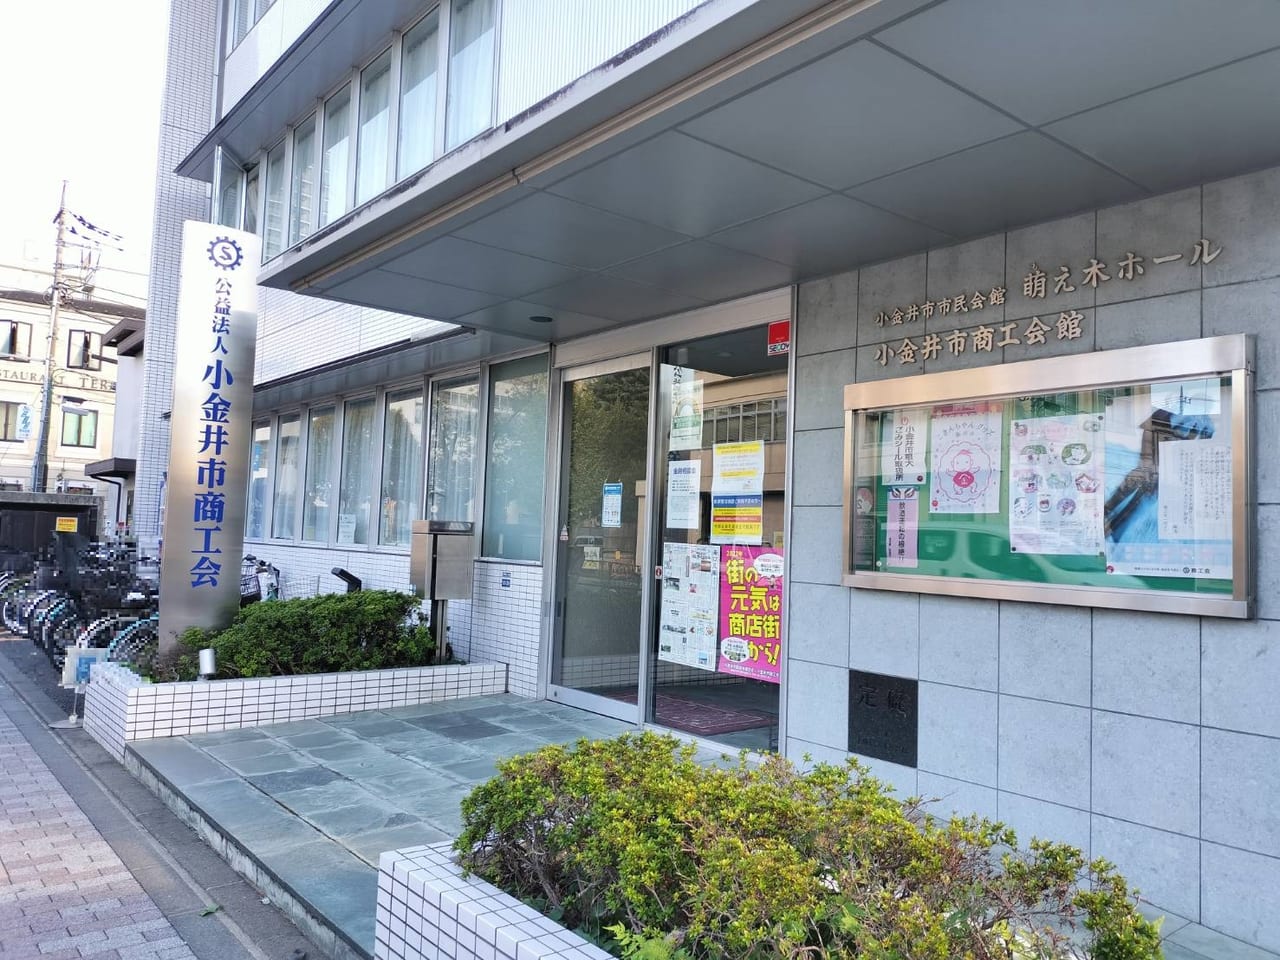 さくらギフトカードプレミアム販売販売場所は小金井市ポイントカードさくら会事務局